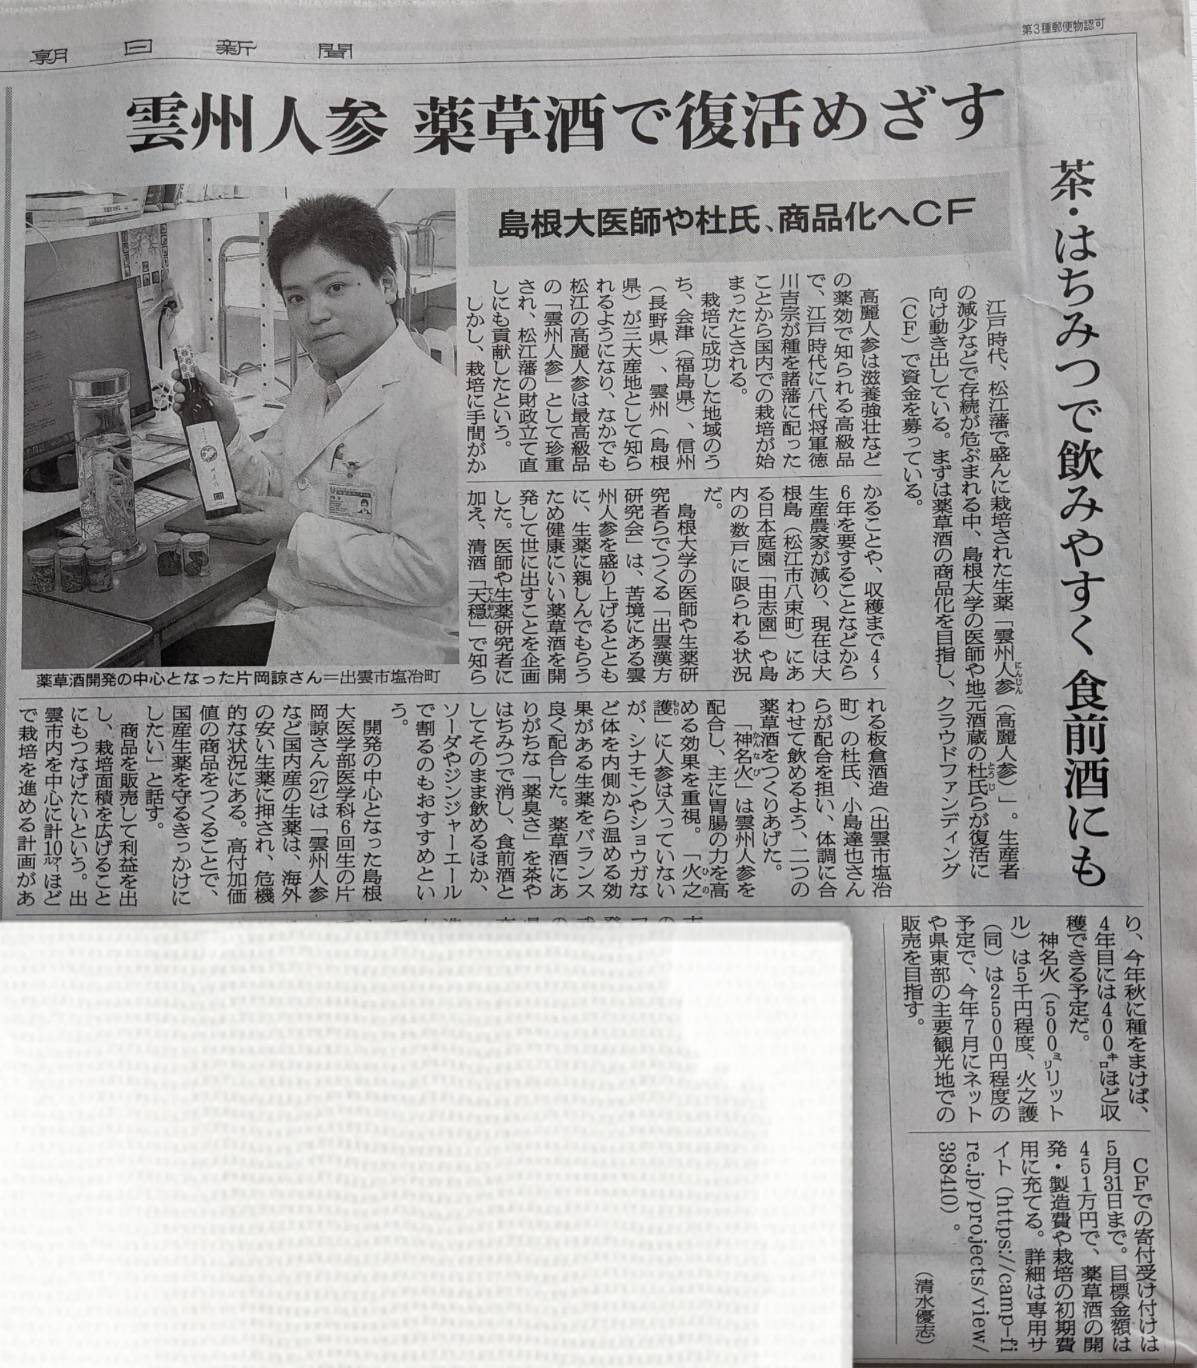 朝日新聞にて「出雲ハーブリキュールプロジェクト」が掲載されました